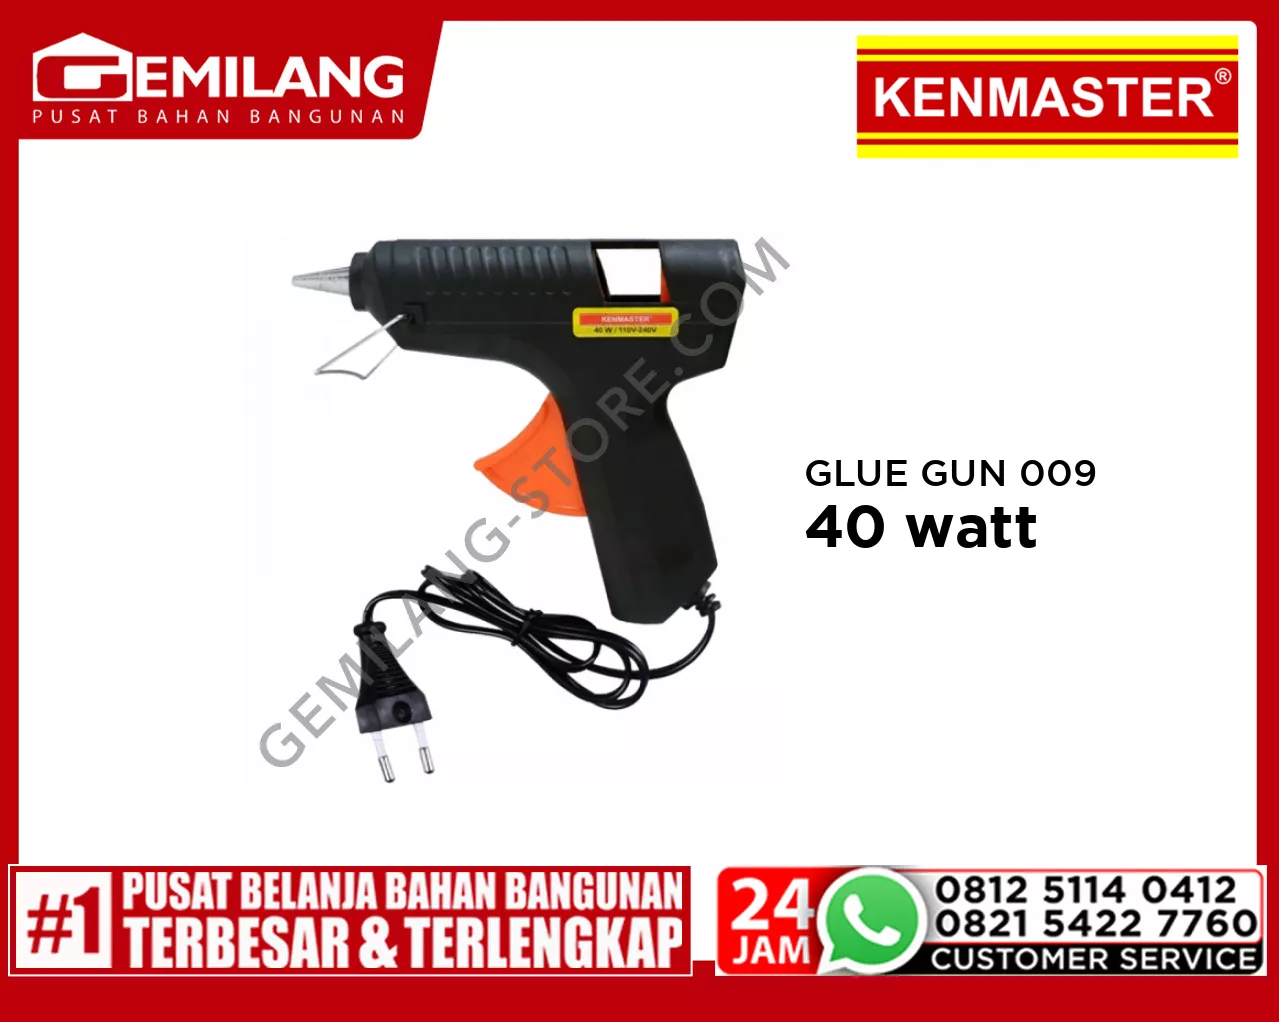 KENMASTER GLUE GUN 009 40w